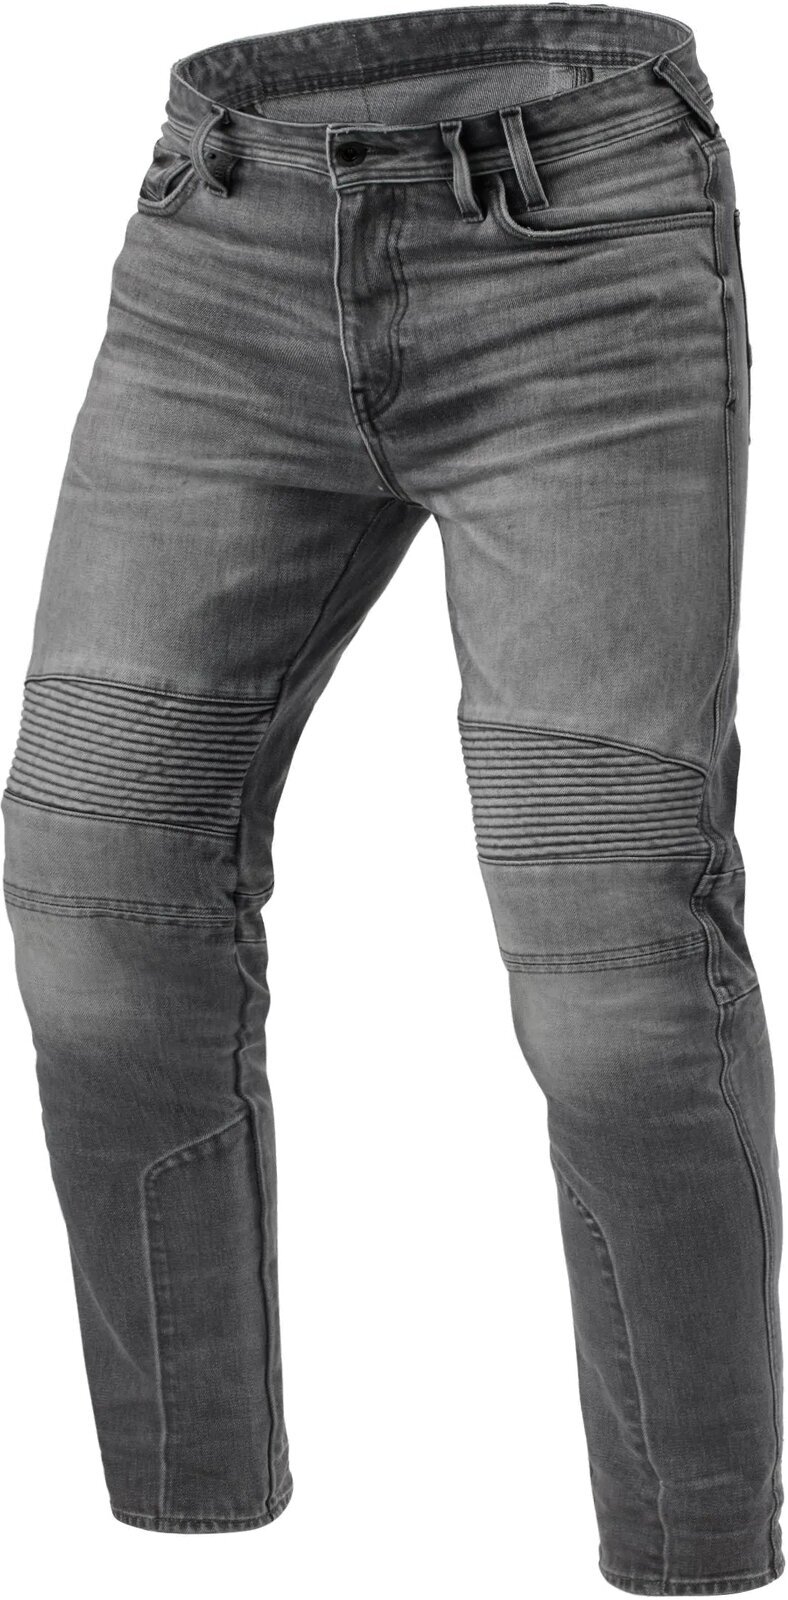 Motoristične jeans hlače Rev'it! Jeans Moto 2 TF Medium Grey 32/32 Motoristične jeans hlače